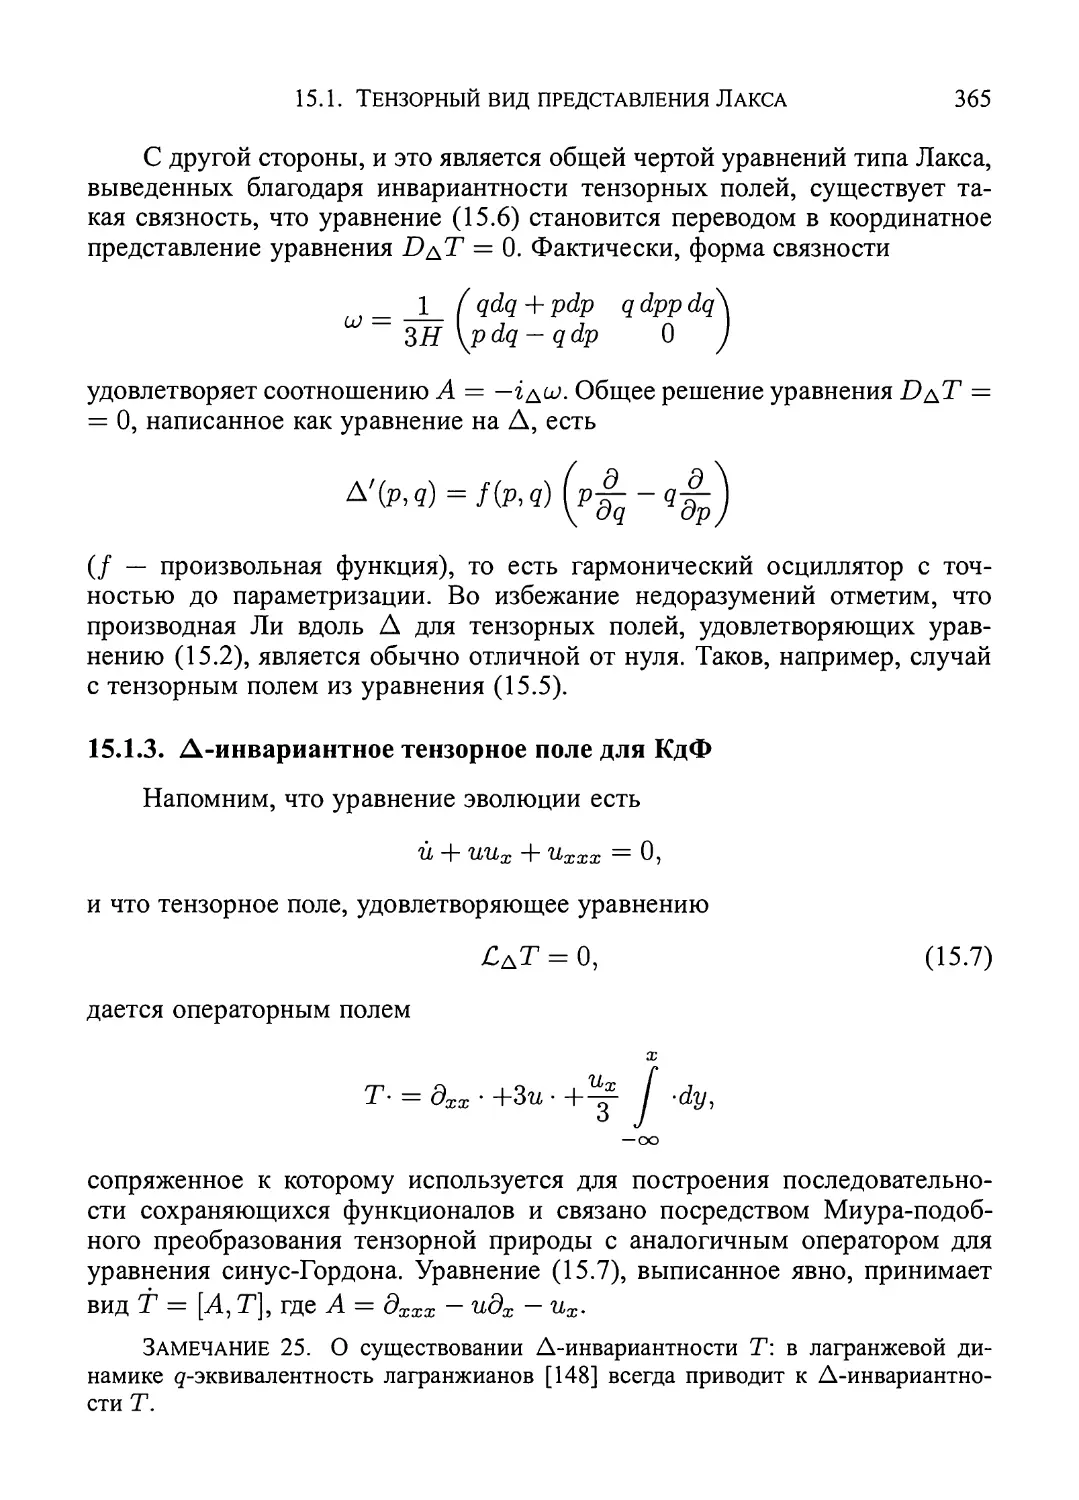 15.1.3.  Δ-инвариантное  тензорное  поле  для  КдФ